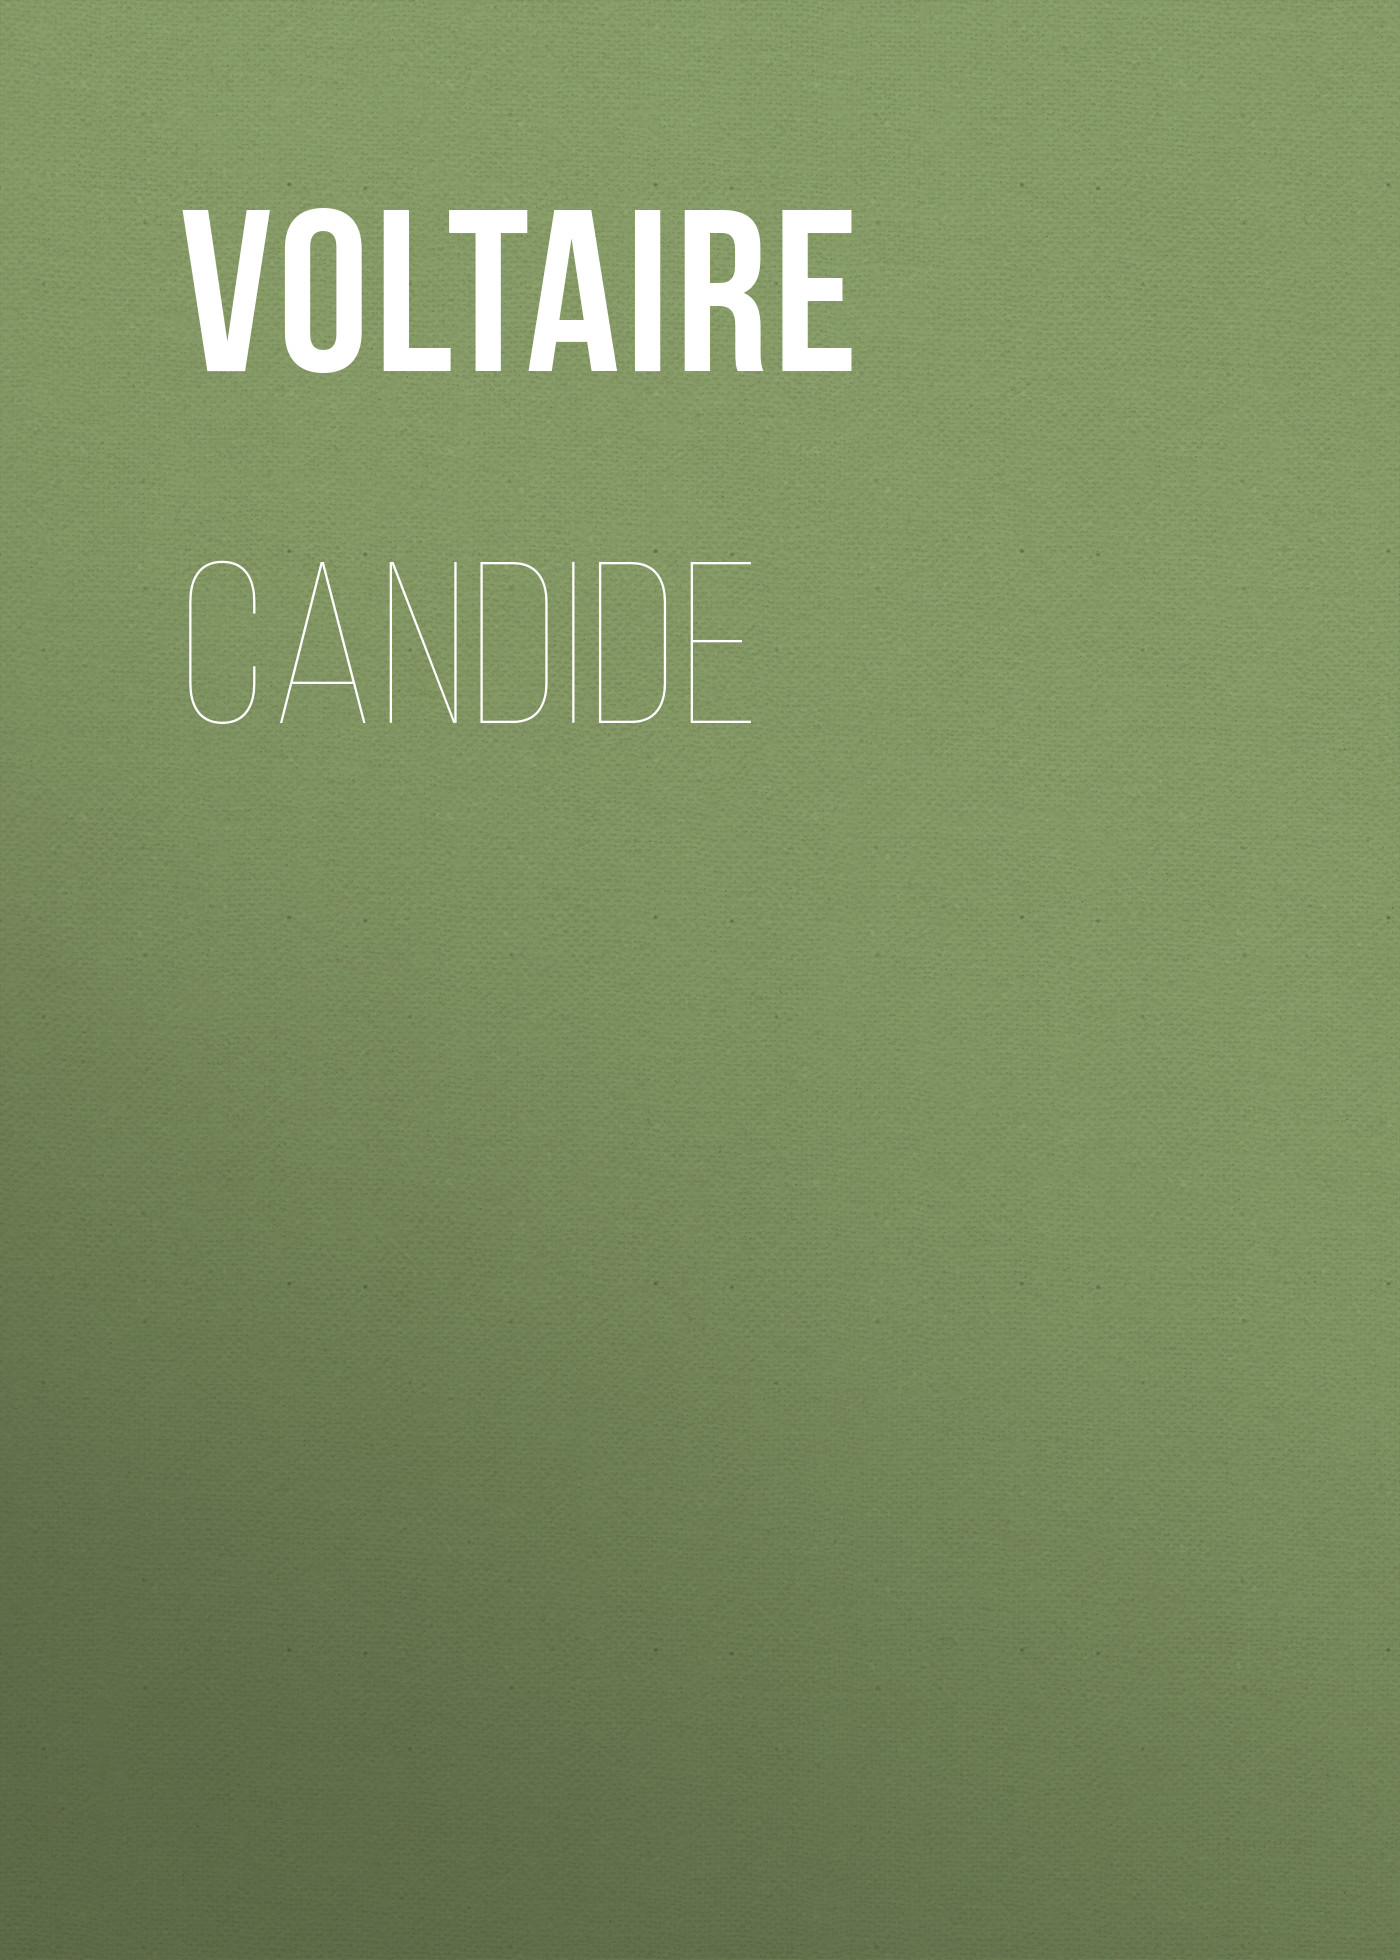 Книга Candide из серии , созданная  Вольтер, может относится к жанру Литература 18 века, Зарубежная классика. Стоимость электронной книги Candide с идентификатором 25560588 составляет 0 руб.